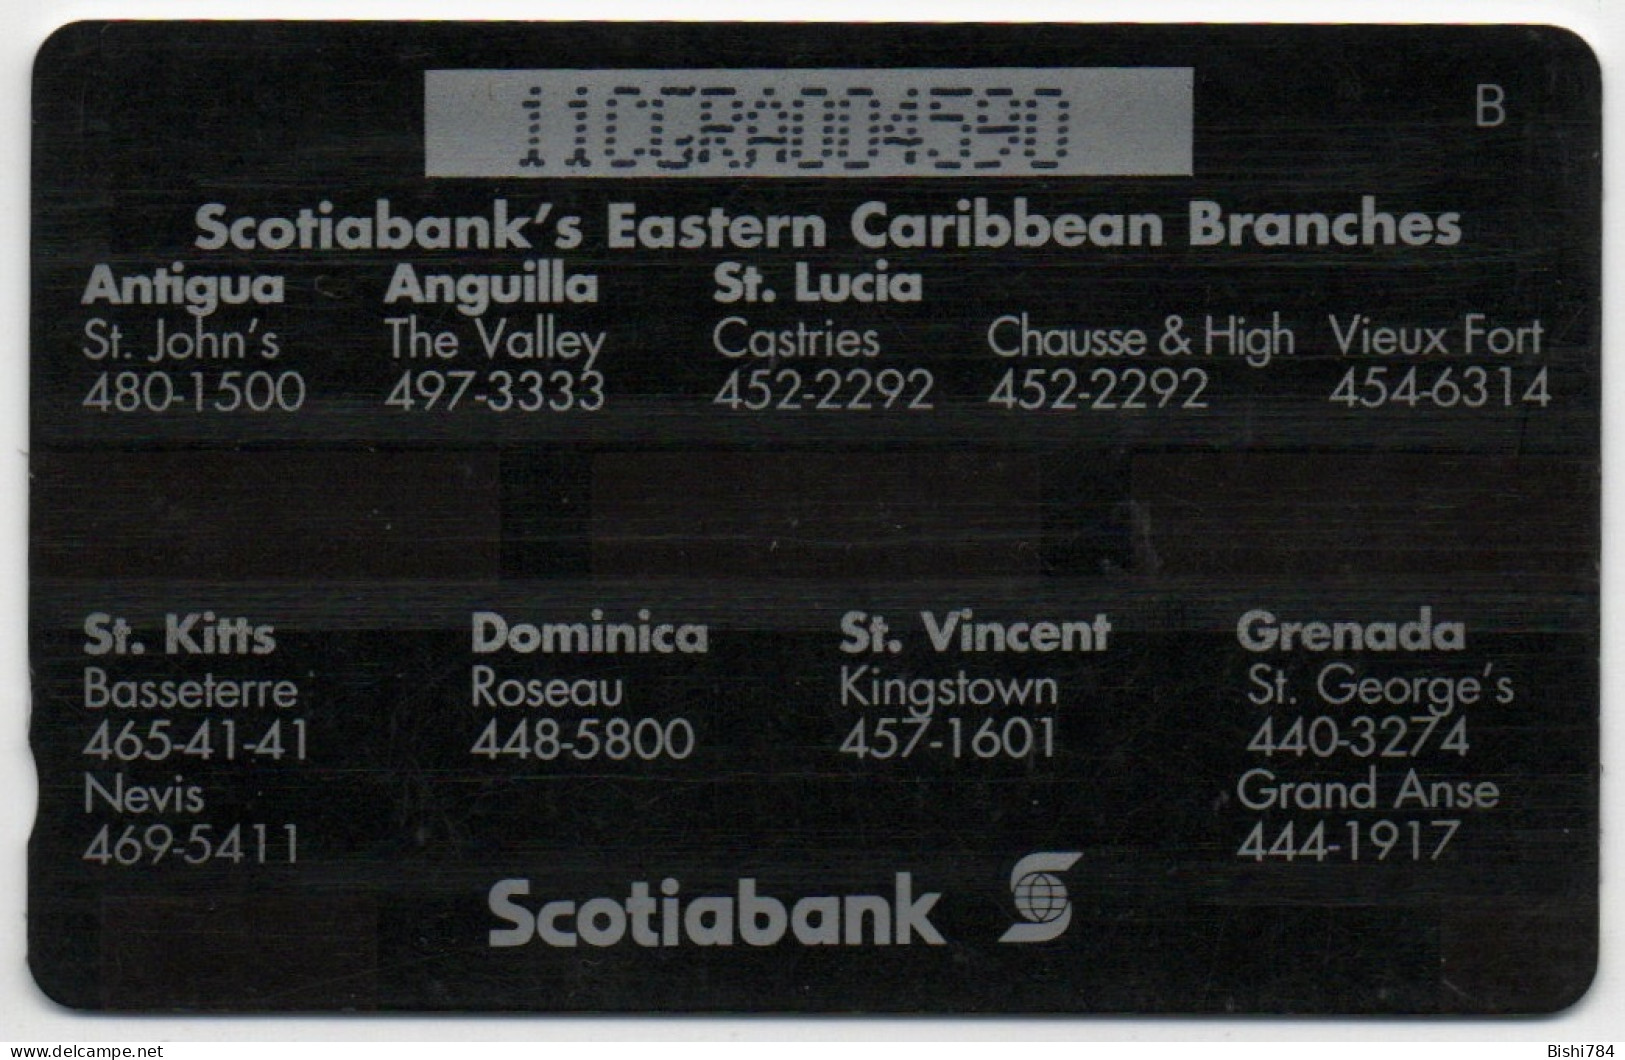 Grenada - Scotiabank - 11CGRA - Grenade